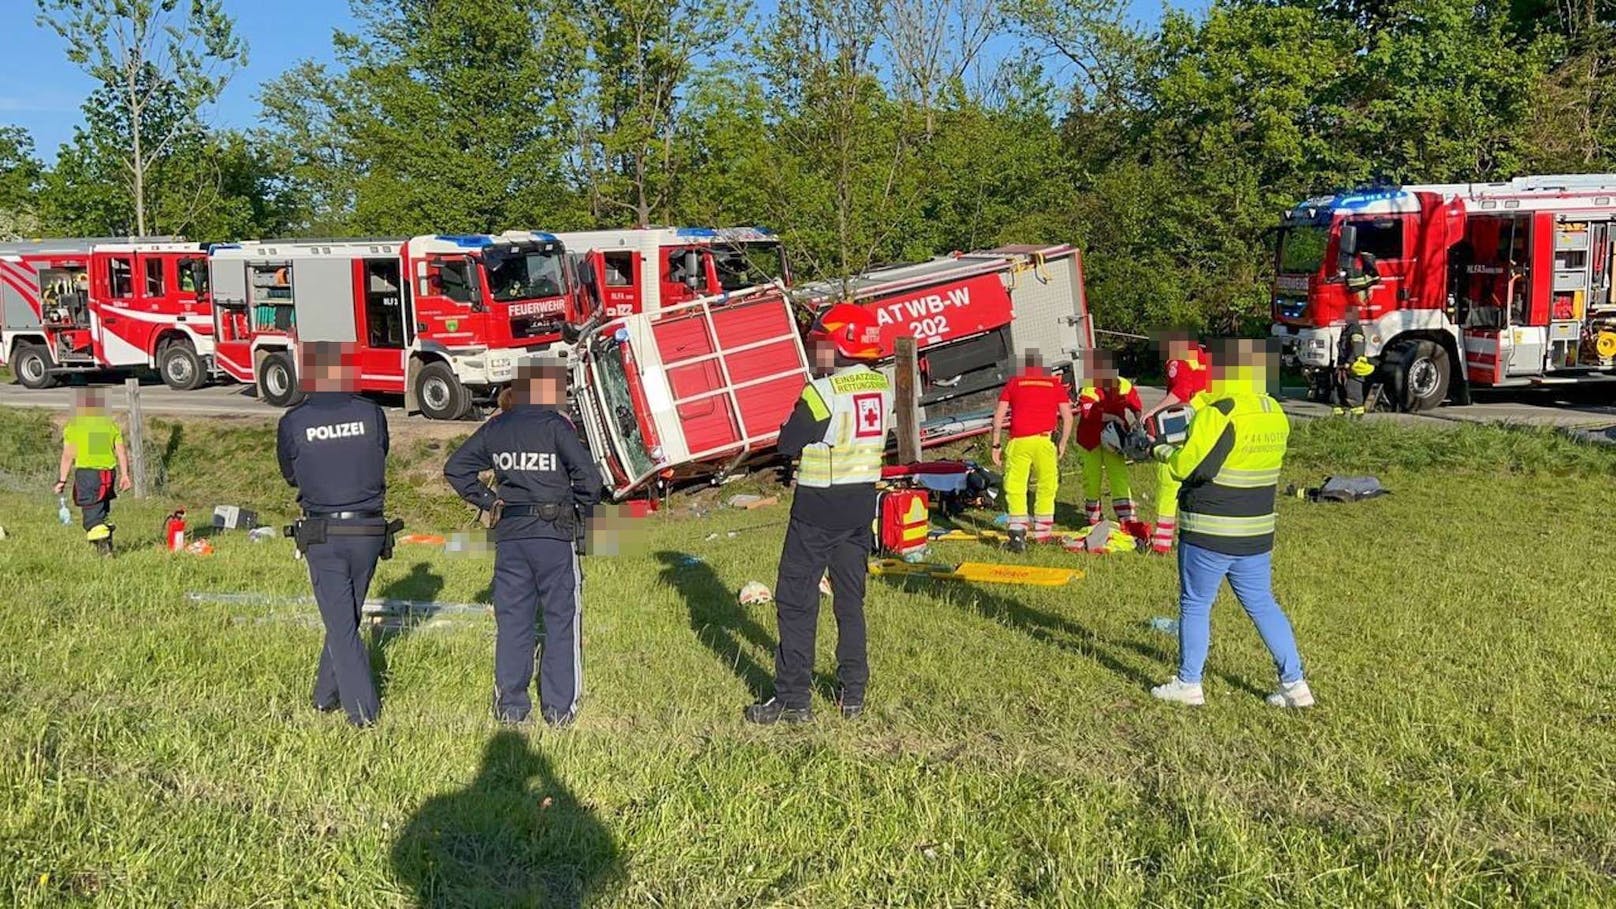 Feuerwehrauto umgestürzt – ein Toter, vier Verletzte